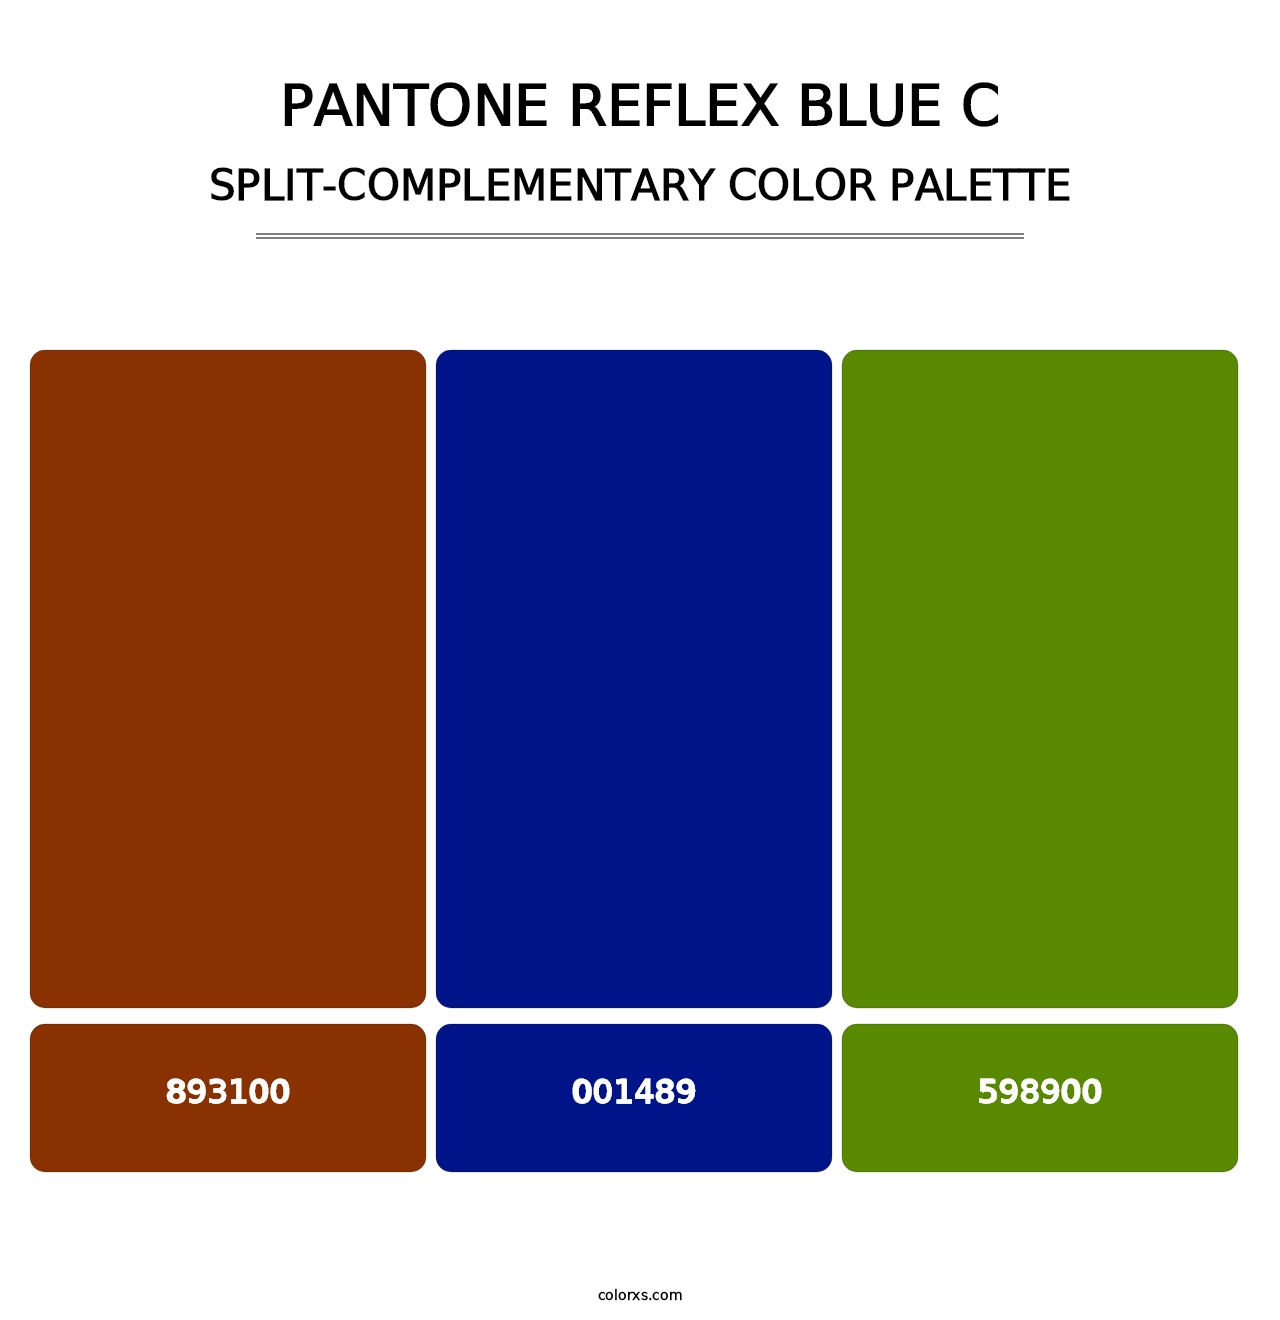 PANTONE Reflex Blue C - Split-Complementary Color Palette